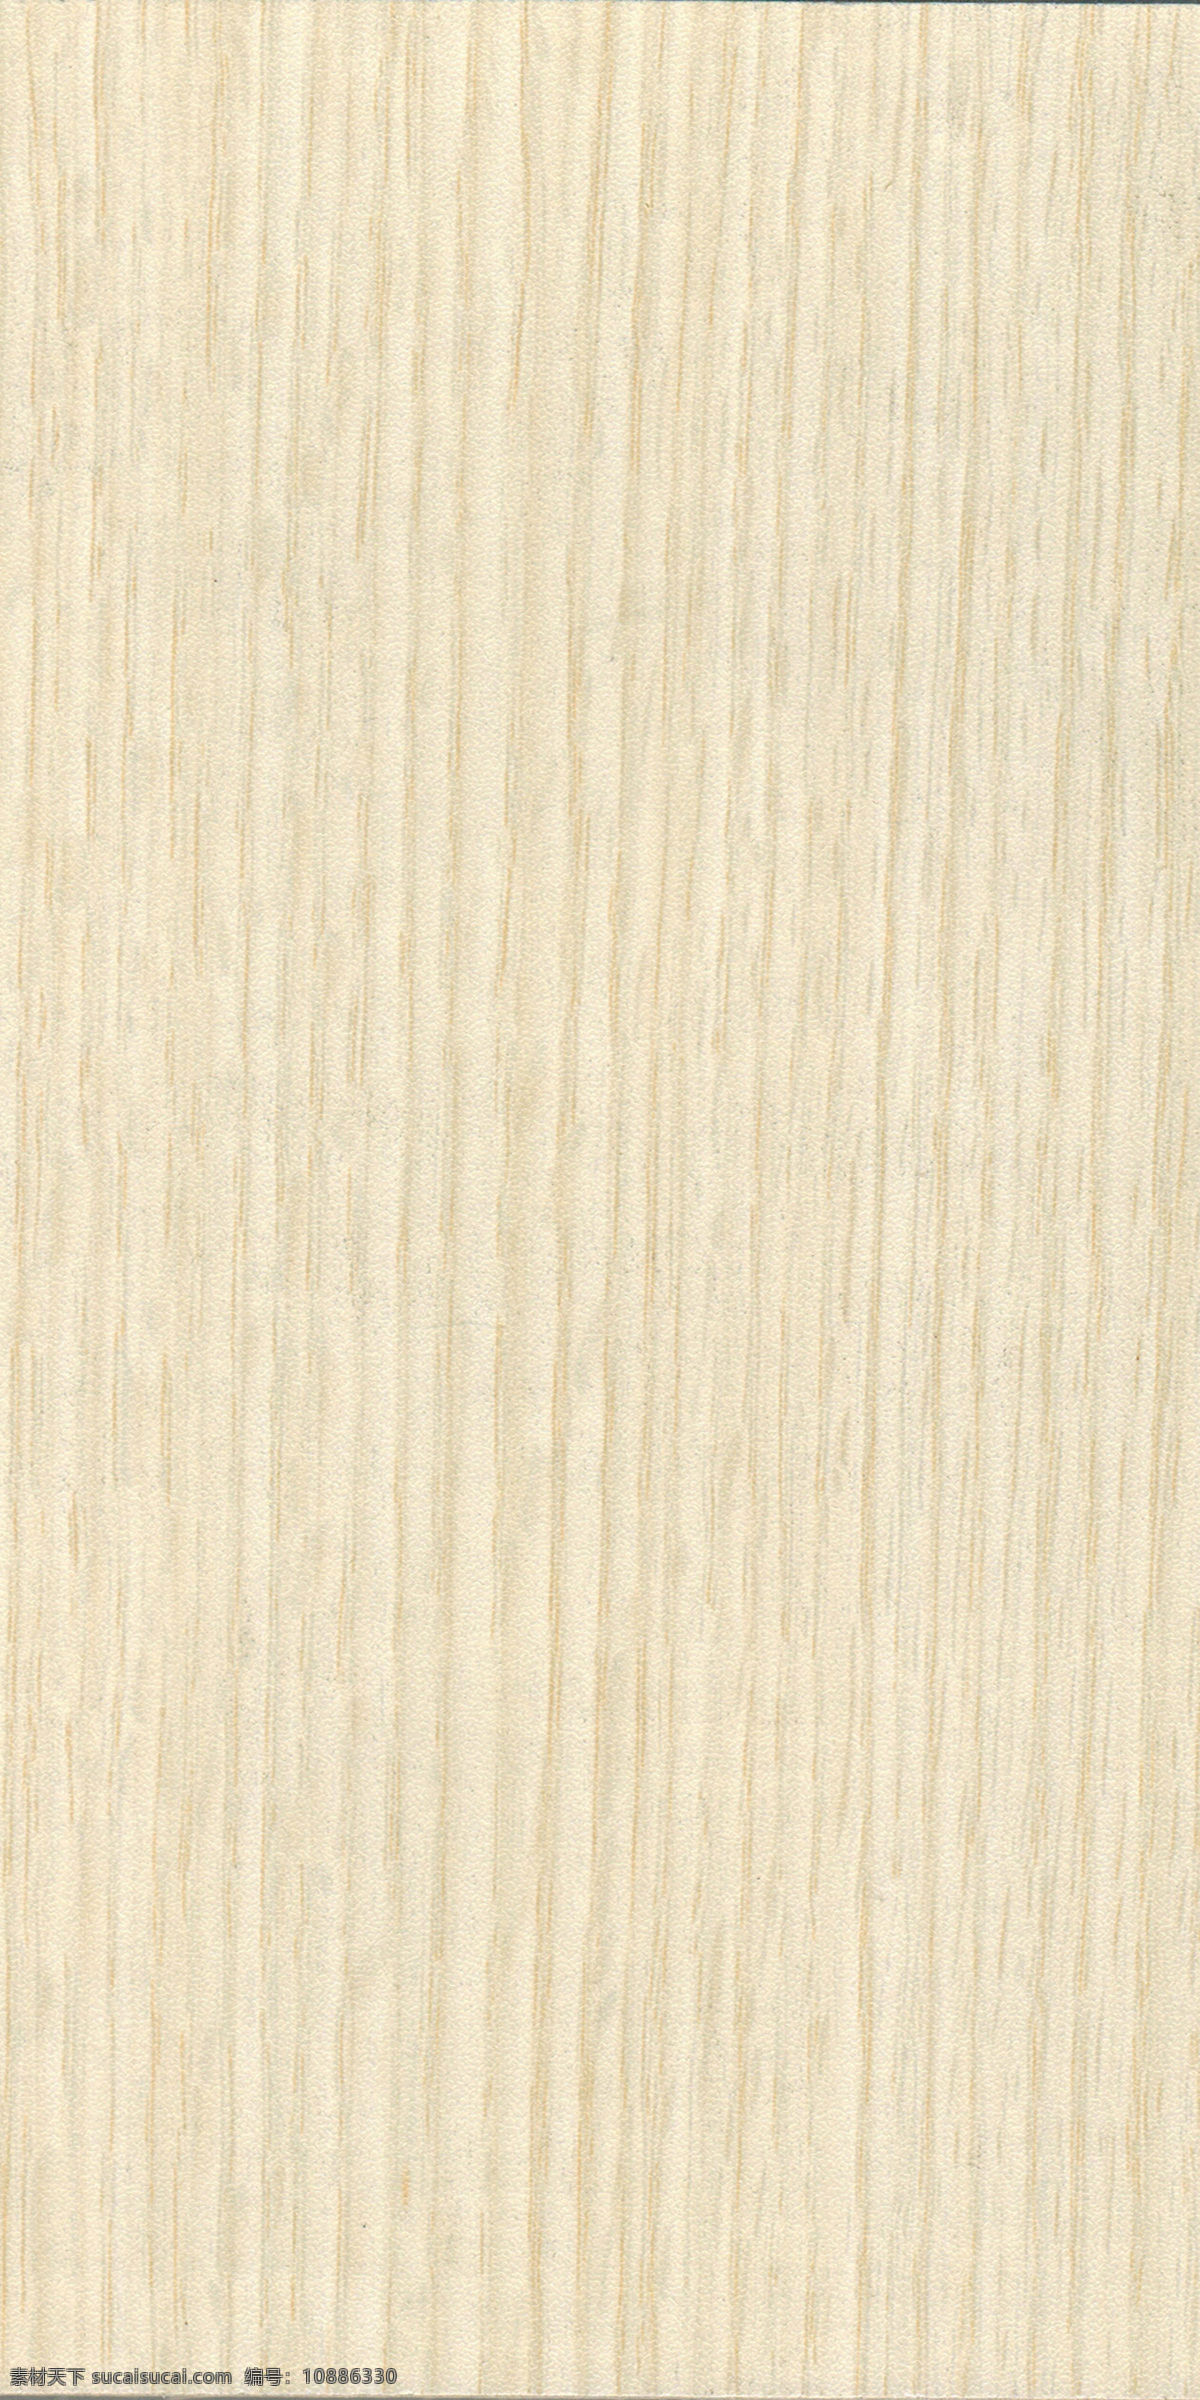 欧洲白橡 室内设计 家装素材 板材 木材 生态板 雨丝银橡